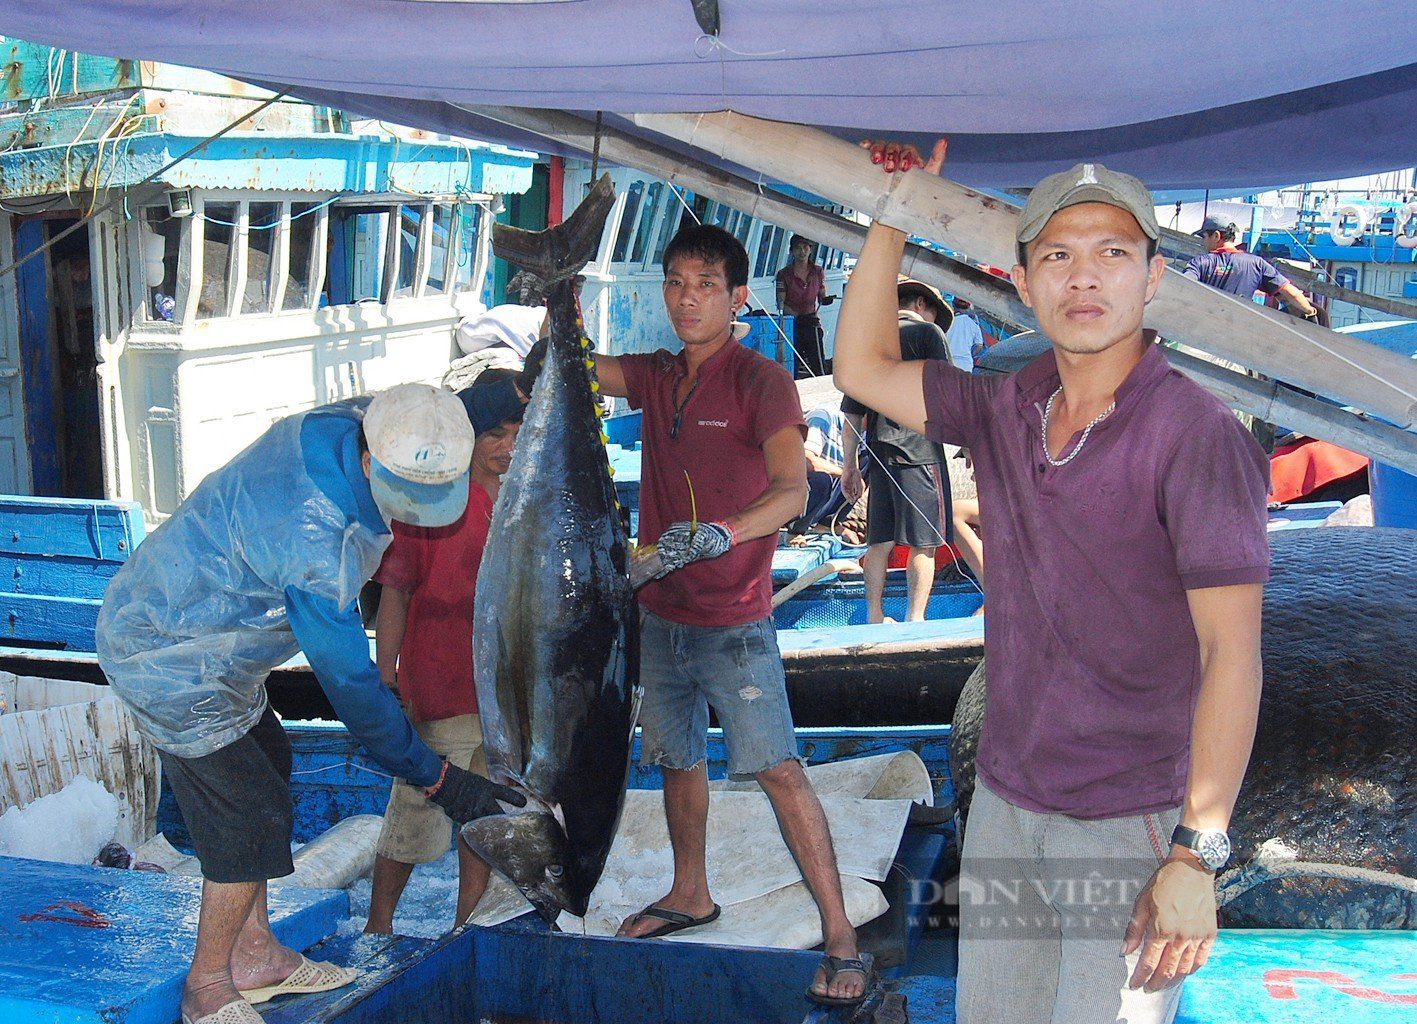 Ngư dân Bình Định bảo quản cá ngừ 'khủng' bằng cách nào, để giúp cá tươi rói, đảm bảo chất lượng? - Ảnh 9.